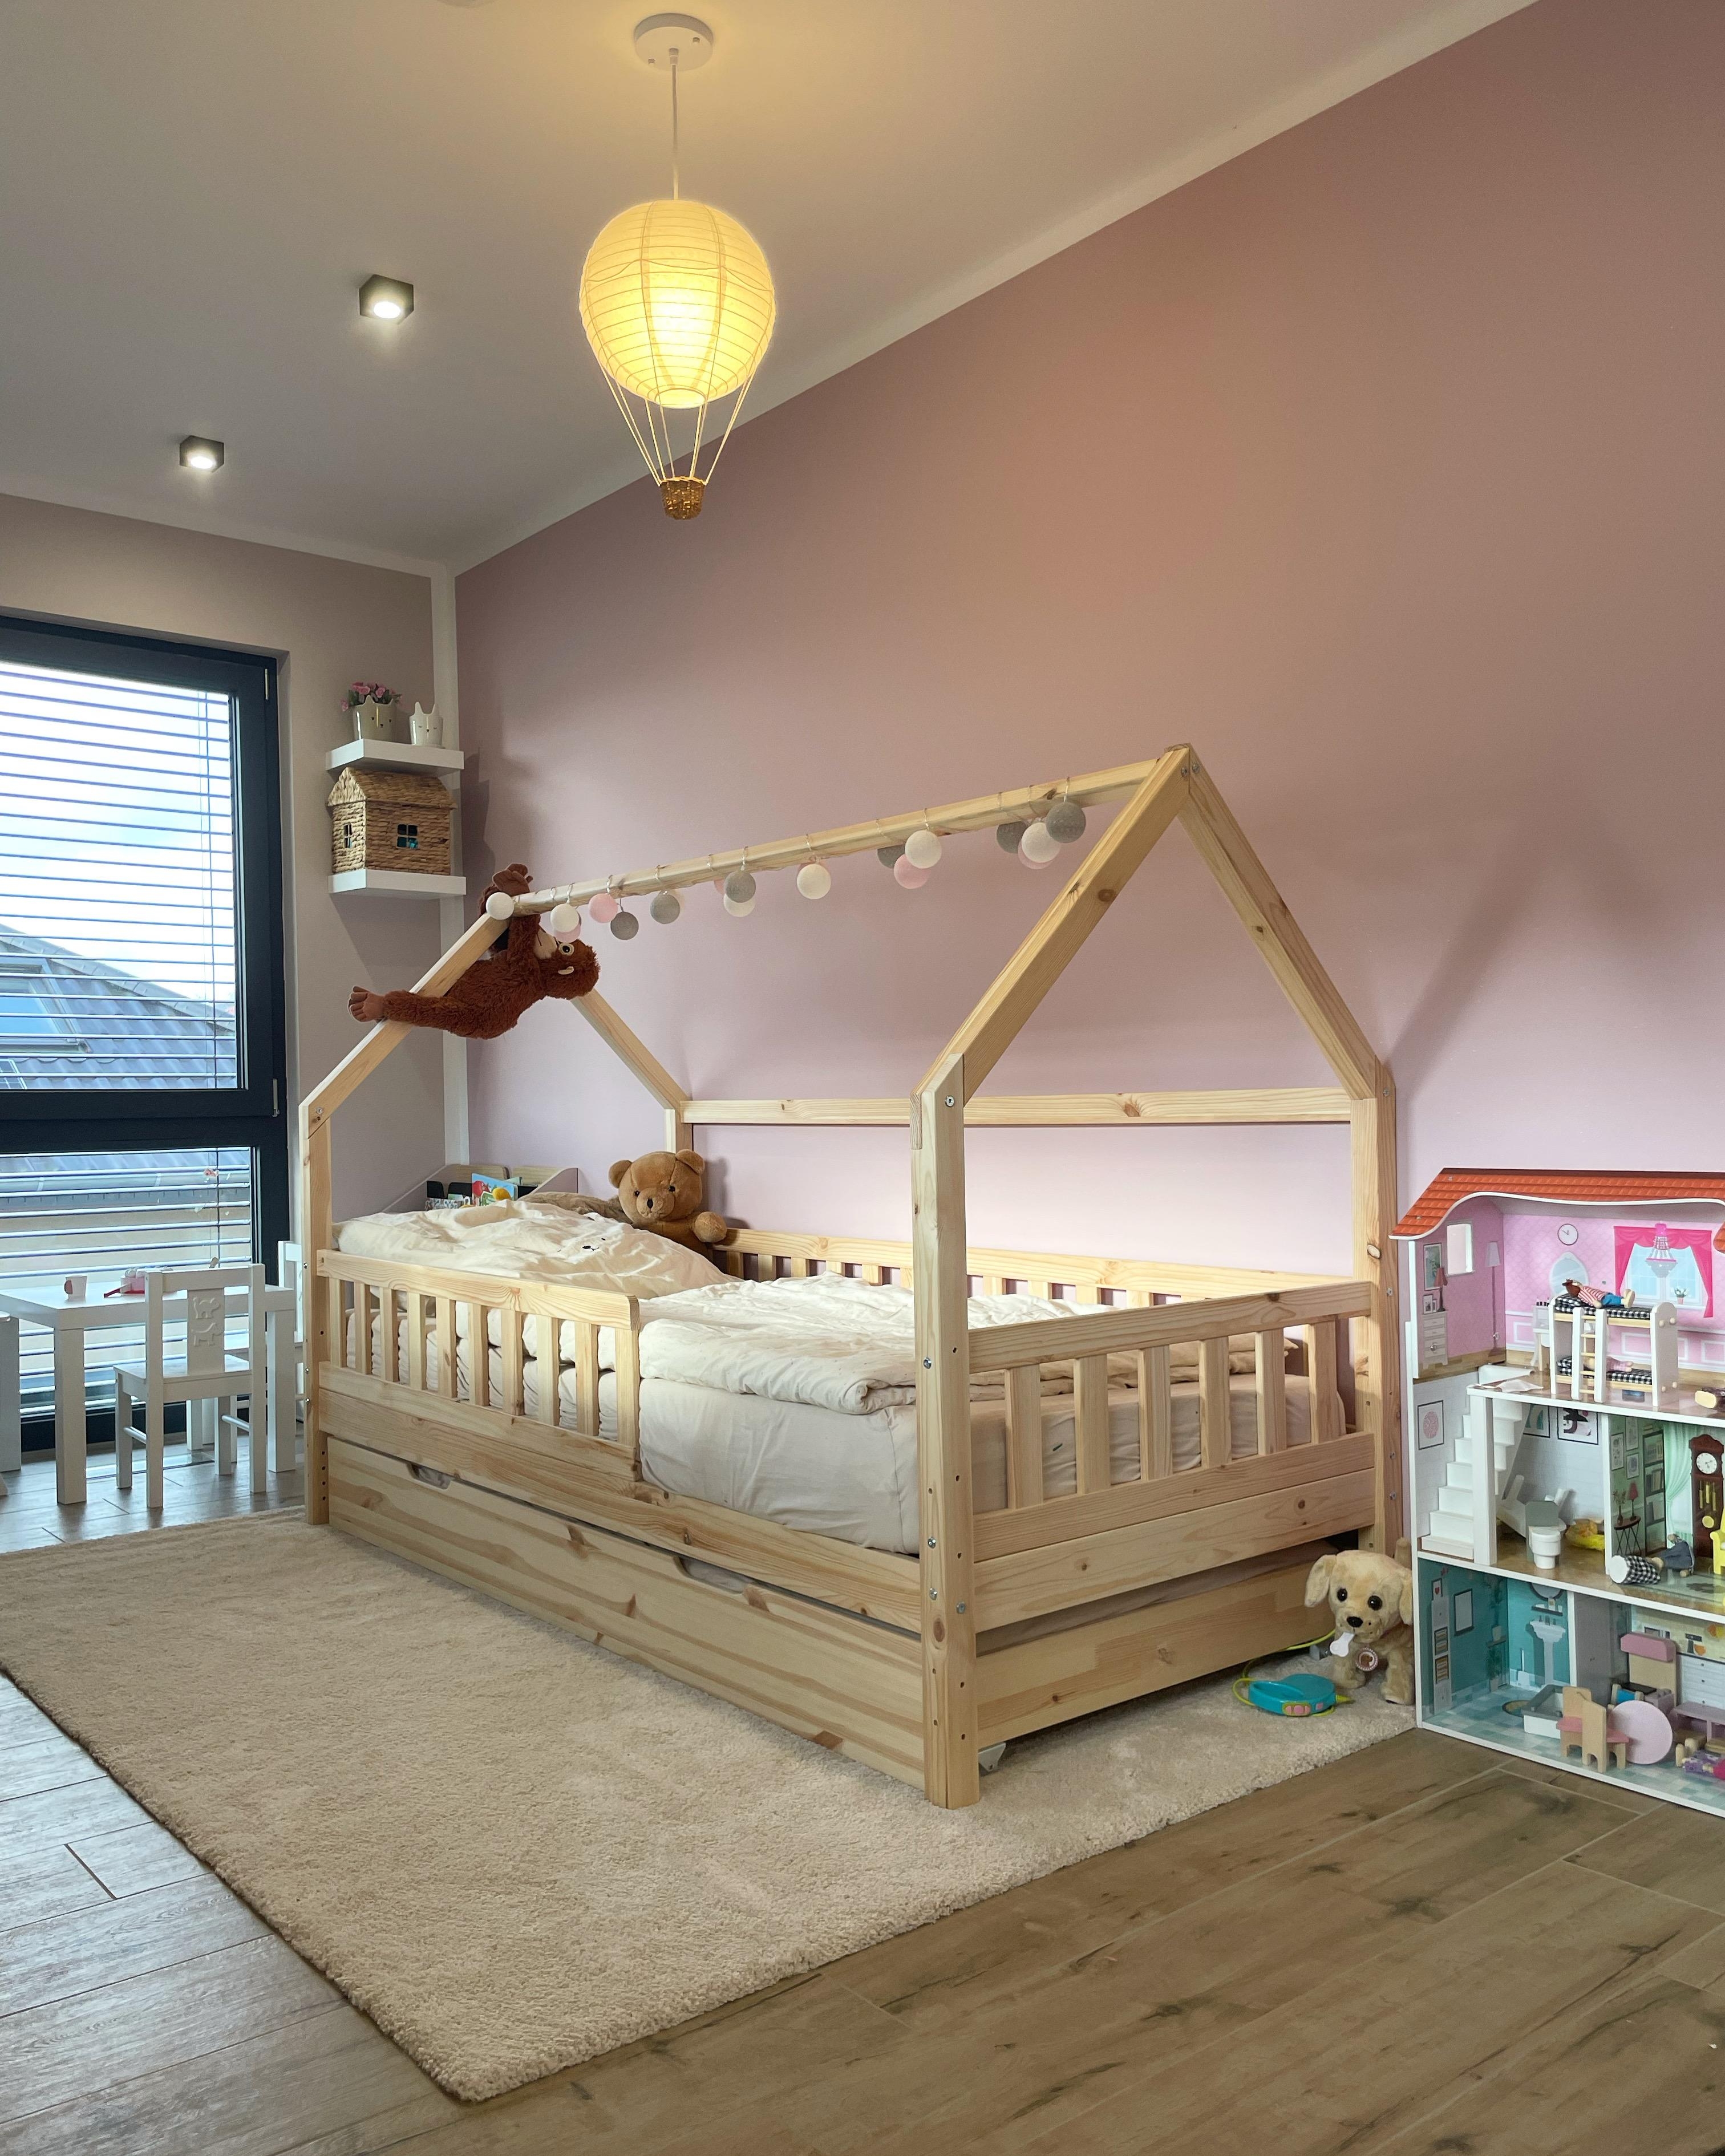 Neuer Teppich 

#kinderzimmer #ikea #hausbett #teppich #mädchenzimmer #hausbau #einrichten #interior #rosa